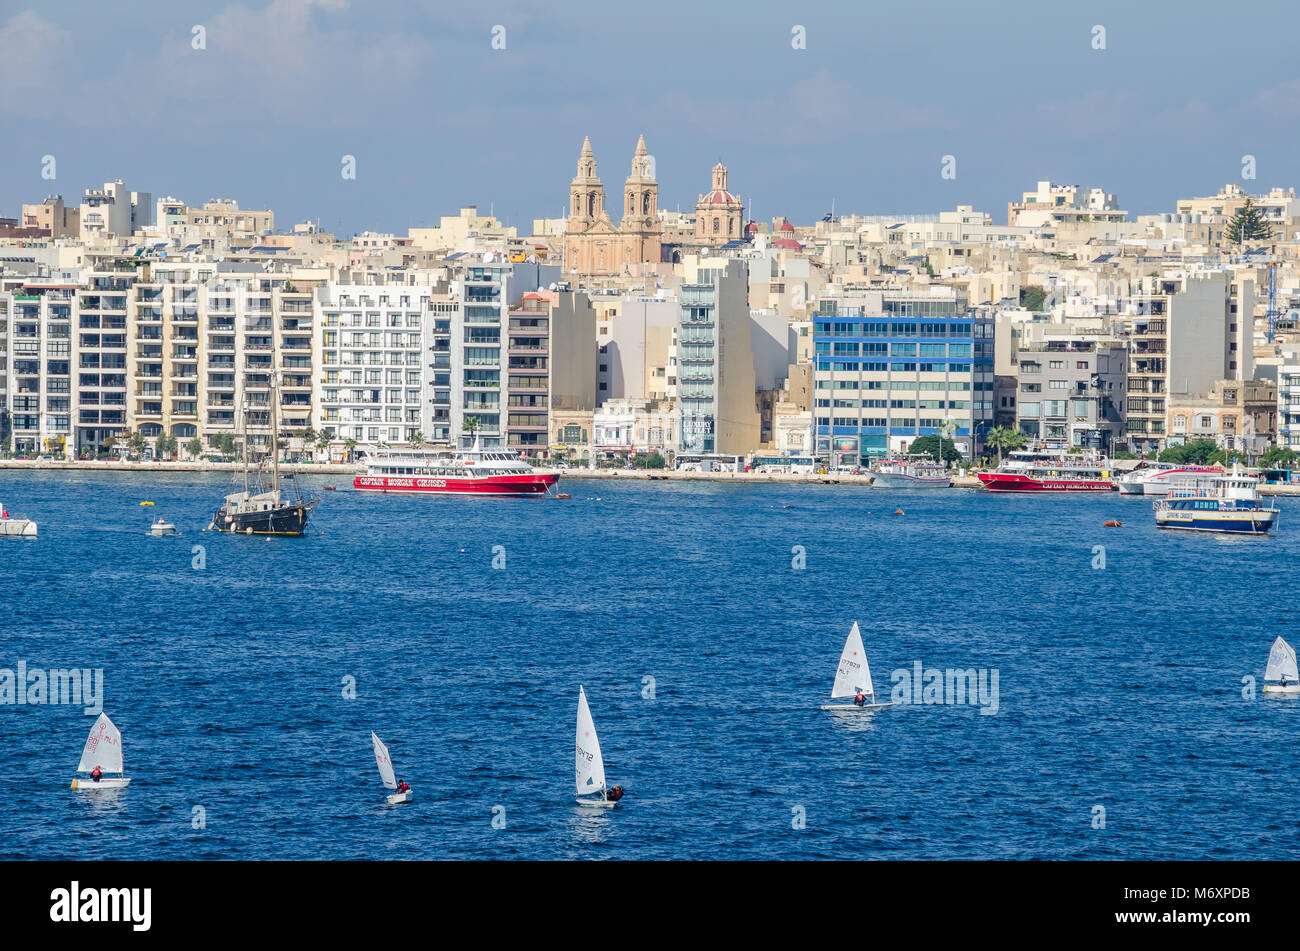 Gzira, Malta - 8. November 2015: Gzira, einer Stadt im Marsamxett Harbour von Valletta entfernt, wie gesehen. Waterfront und dicht bebaute über moderne Gebäude Stockfoto